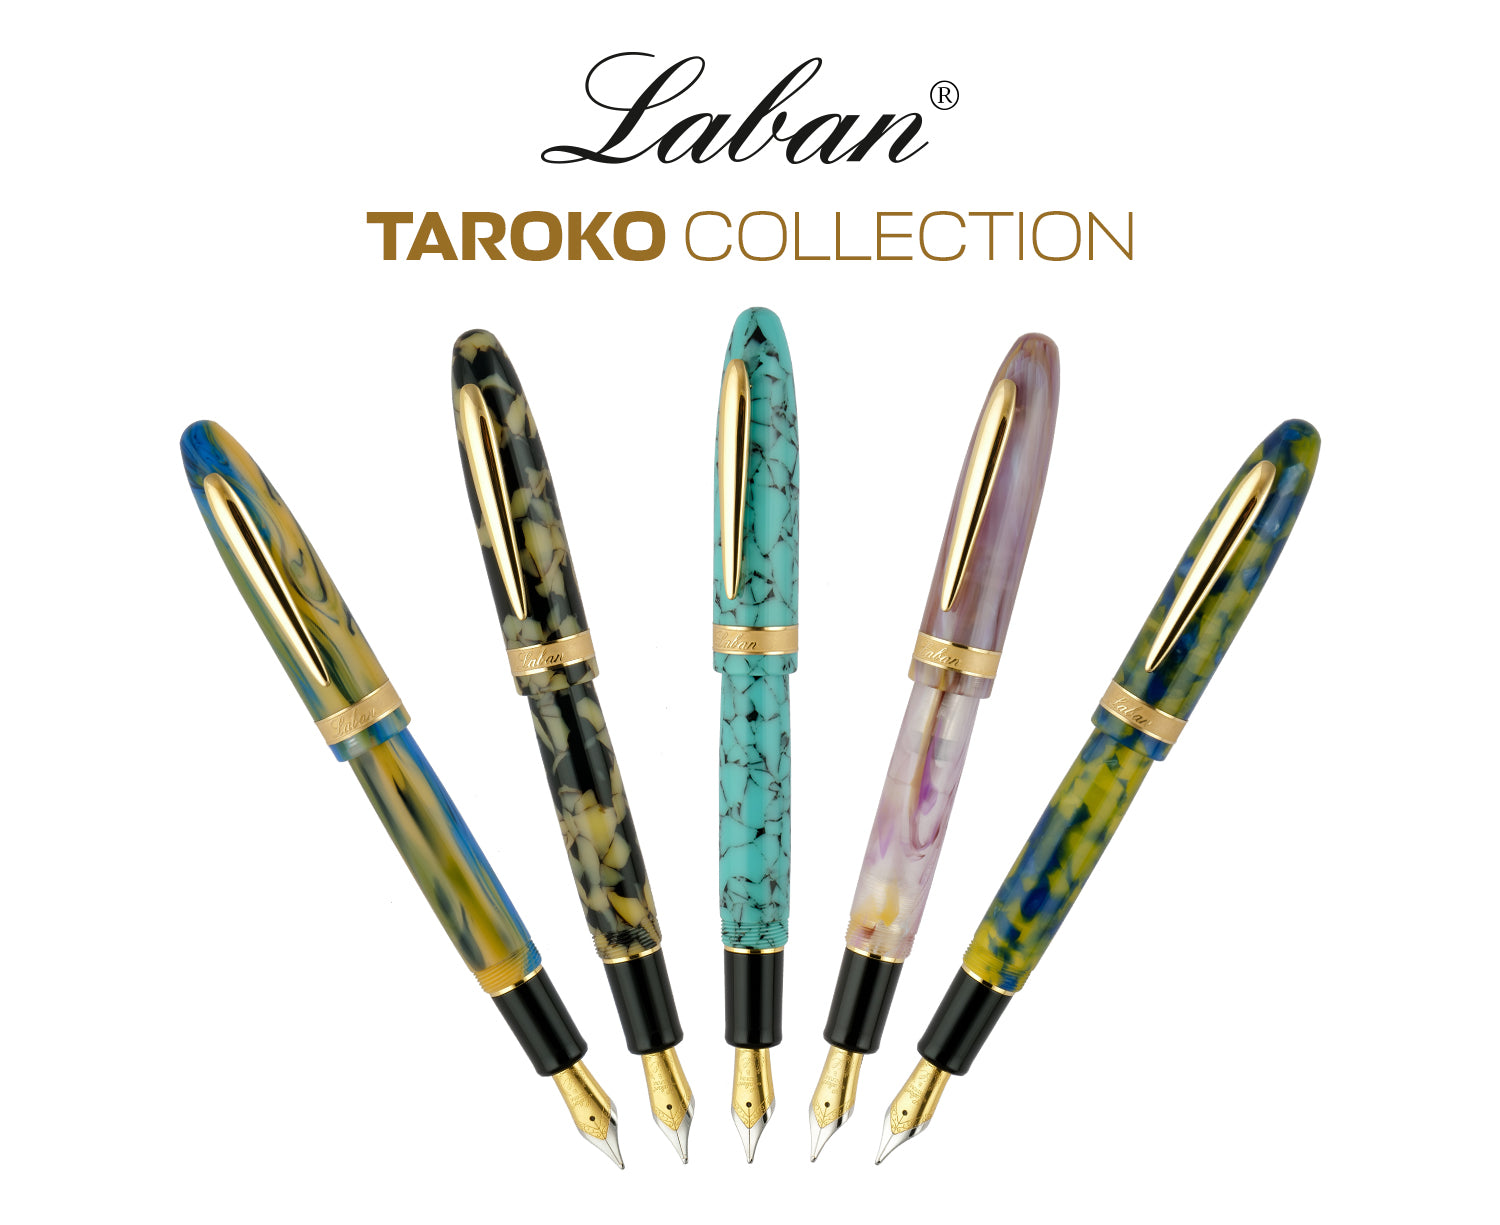 LABAN Taroko Collection